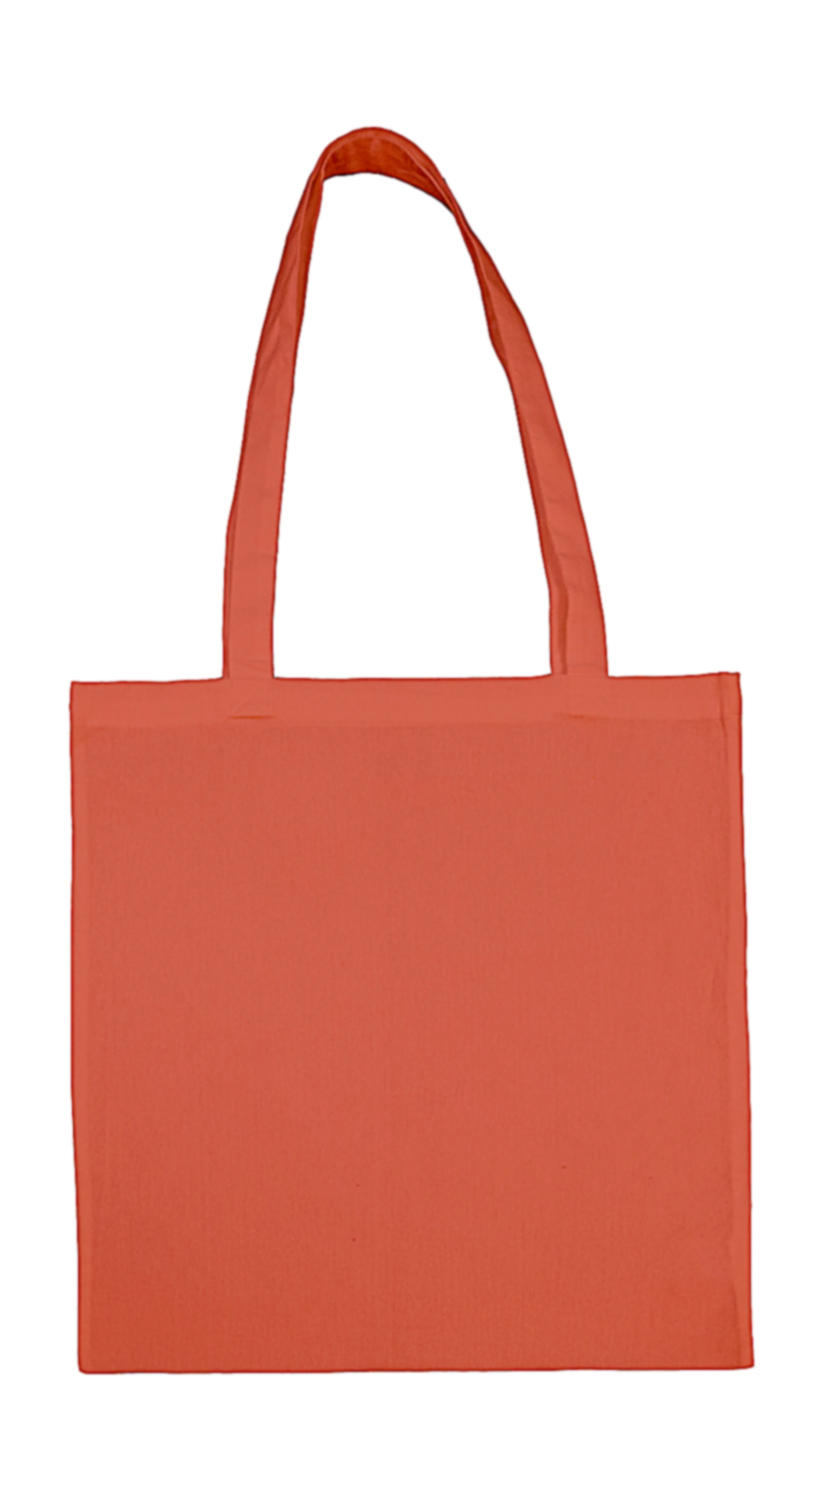 Bags by jassz - bolsa de algodón asa larga - 601. 57